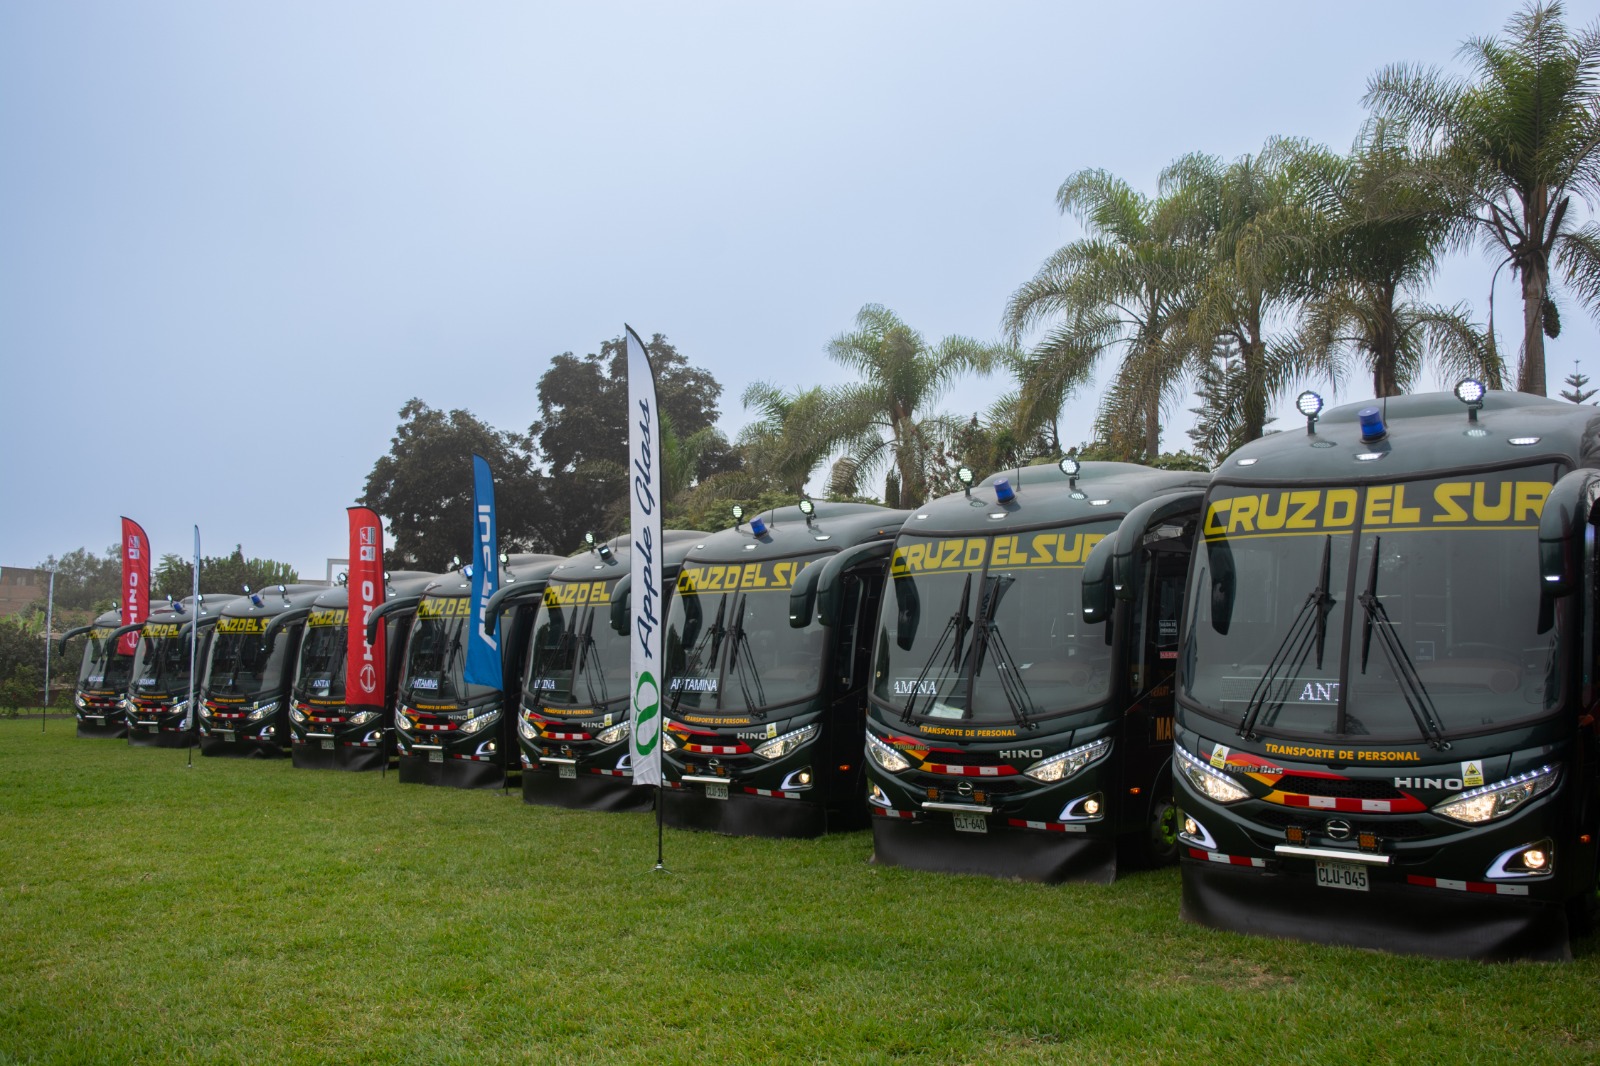 HINO entrega 42 buses a Cruz del Sur para transporte de personal de Antamina